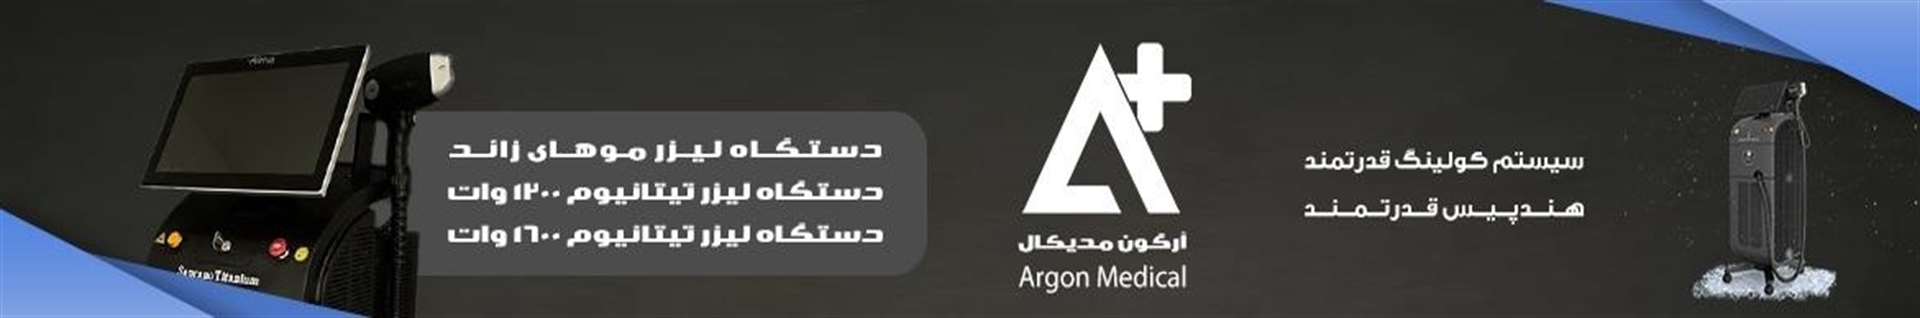 argon medical